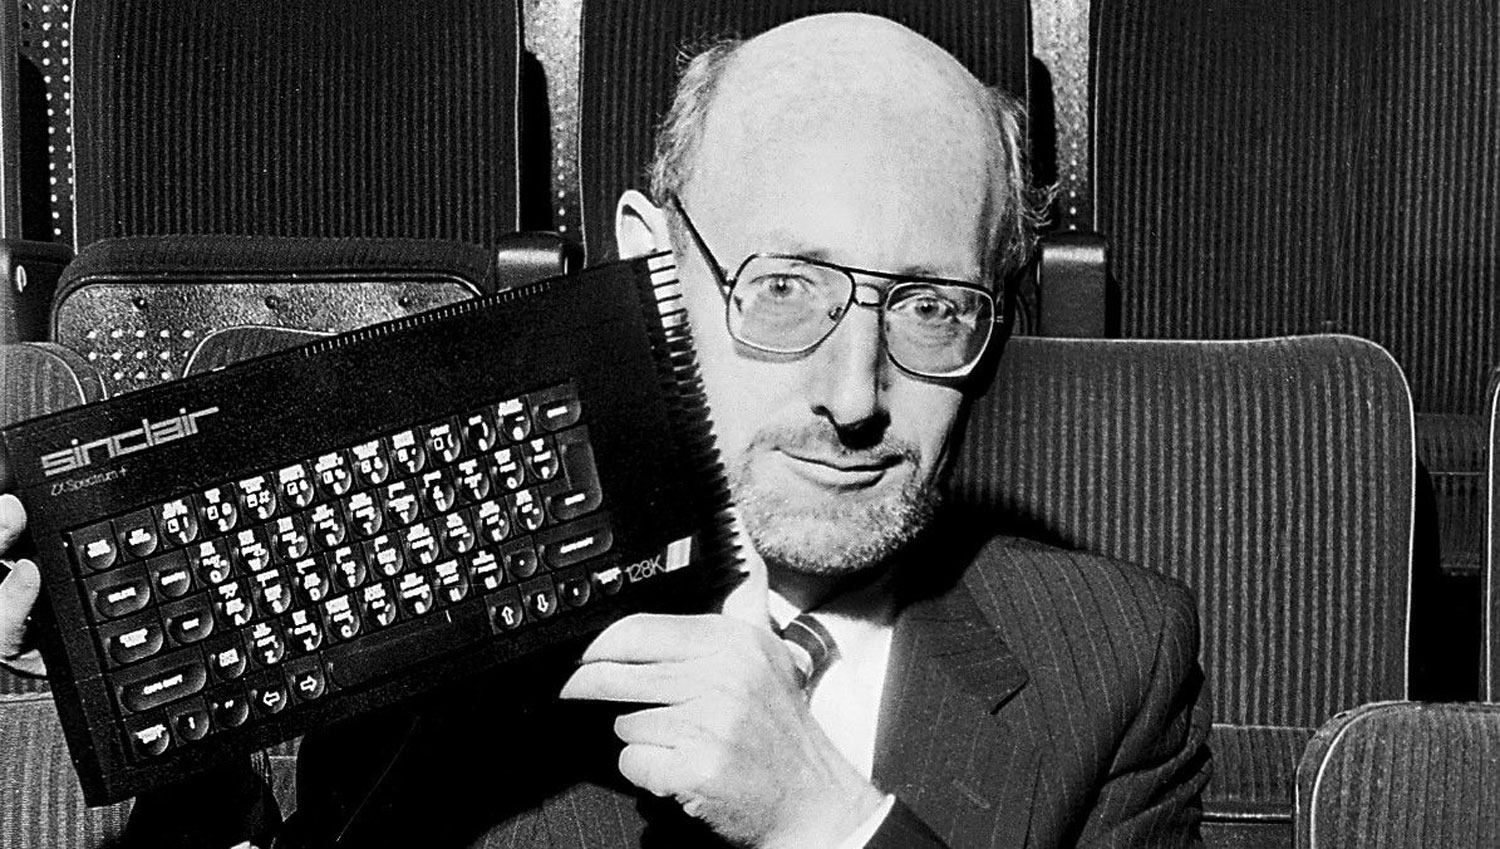 Sir Clive Sinclair Pelopor Komputer dan Kereta Elektrik Peribadi Meninggal Dunia